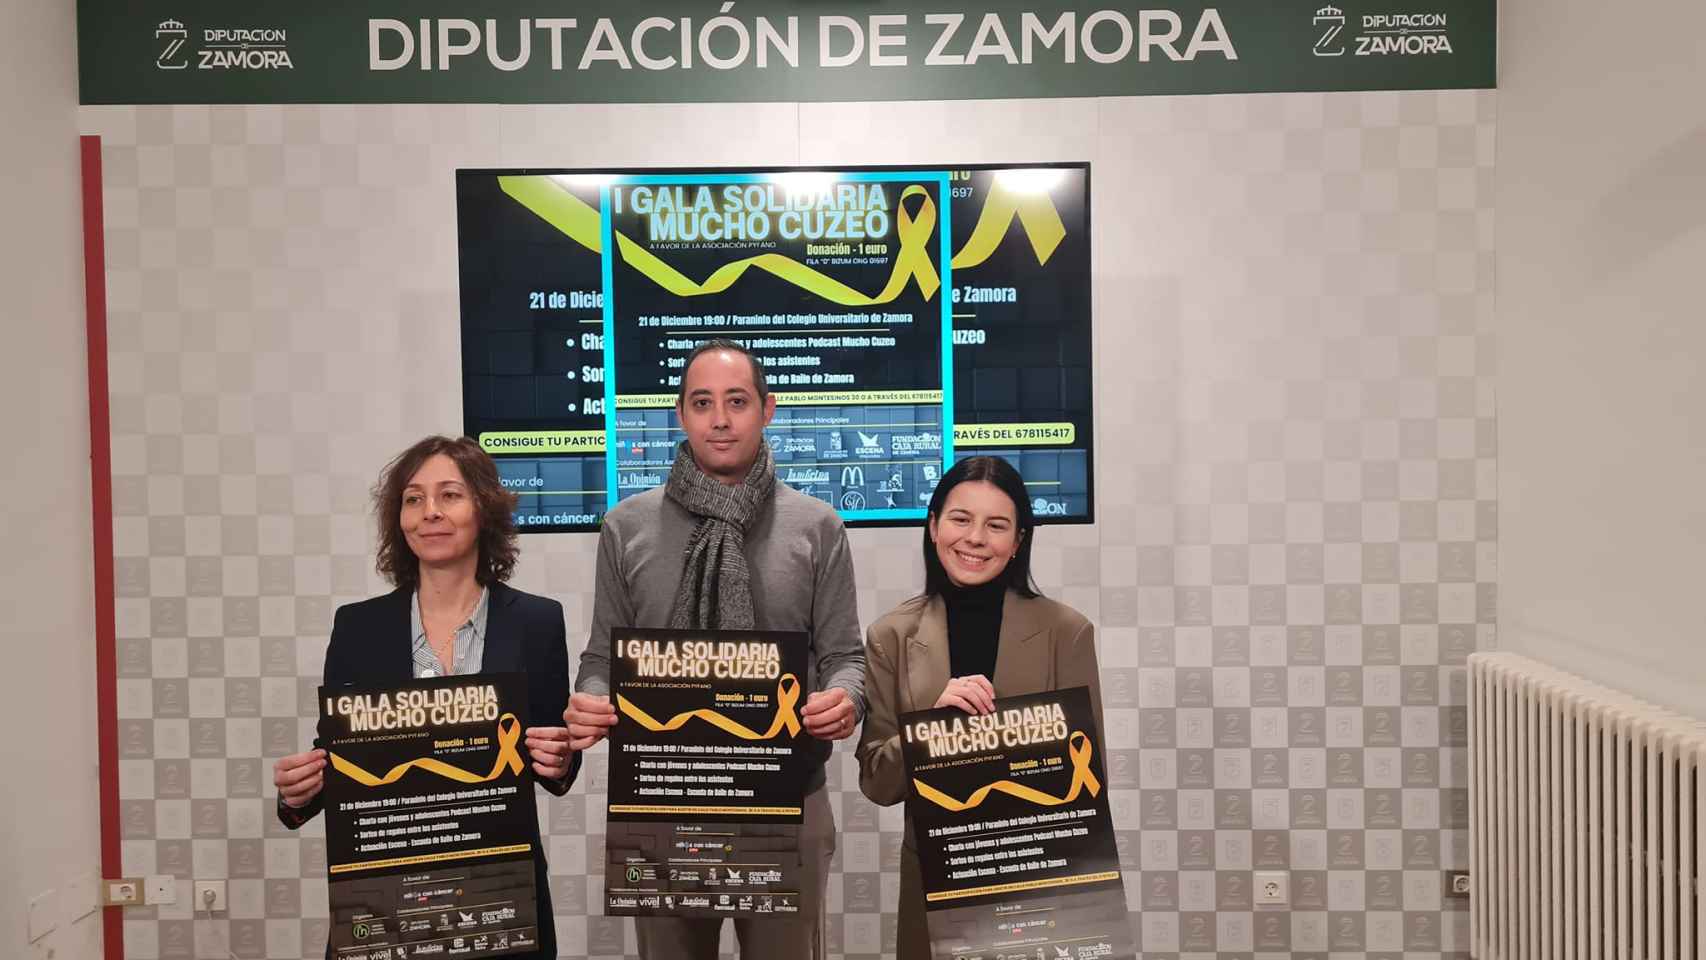 Presentación de la I Gala Mucho Cuzeo, organizada por la Diputación de Zamora